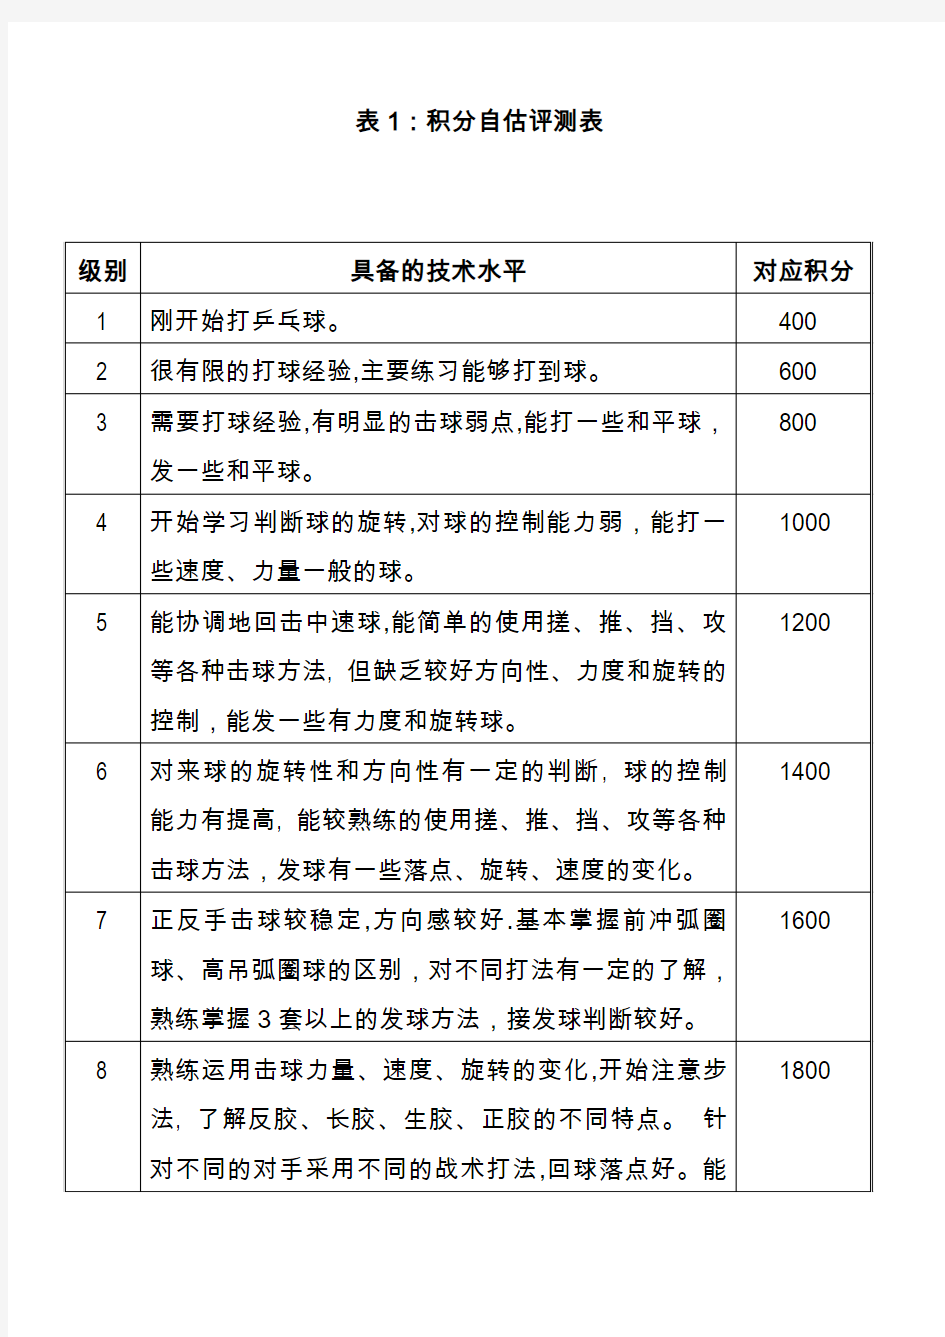 中国乒乓球协会会员积分赛介绍